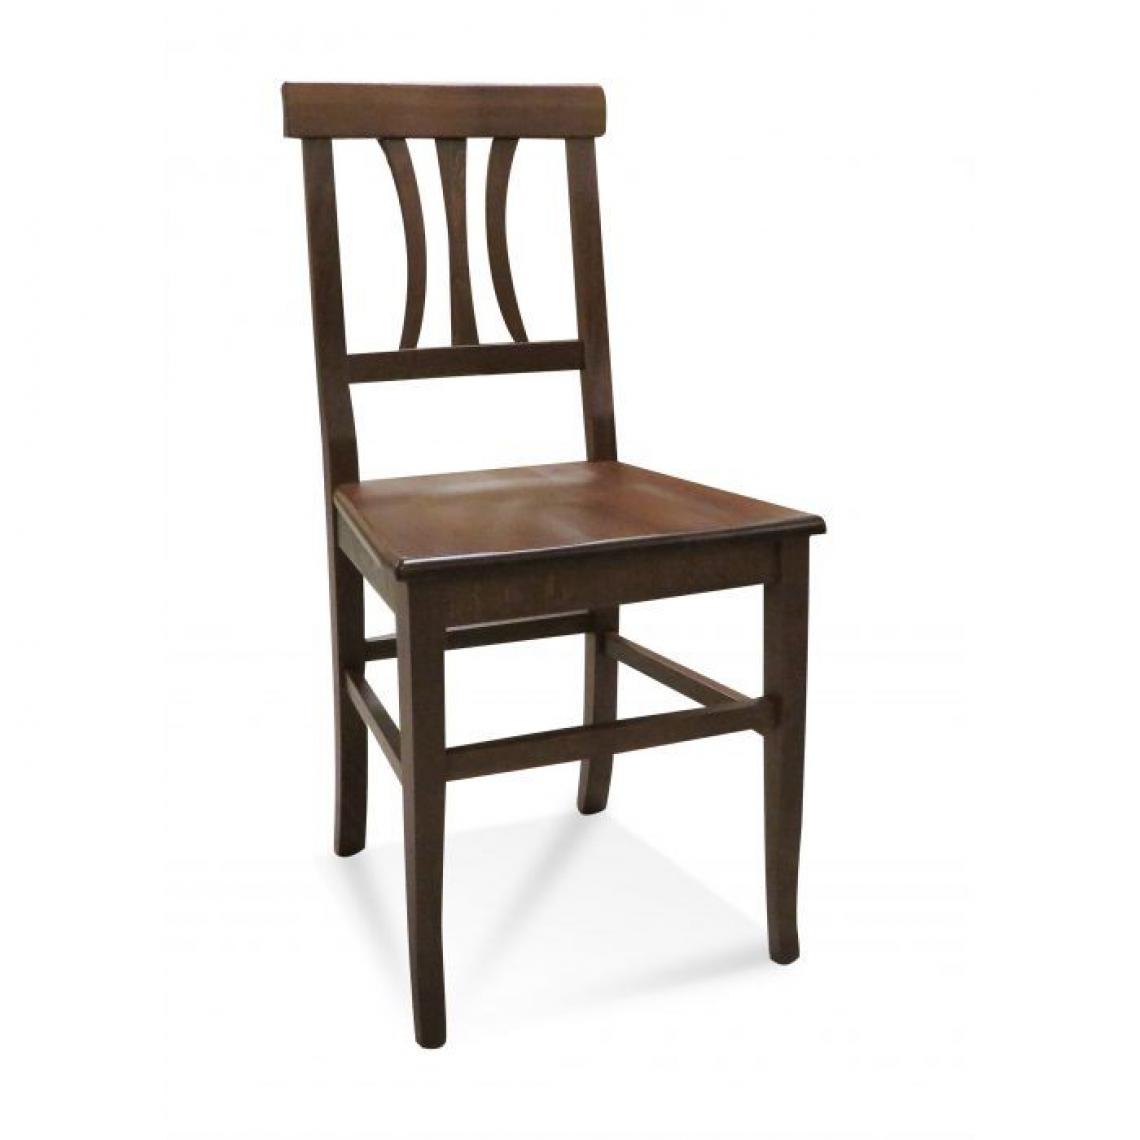 Alter - Chaise classique en bois, avec fond en bois, Made in Italy, 44x44h89 cm, couleur Noyer - Chaises